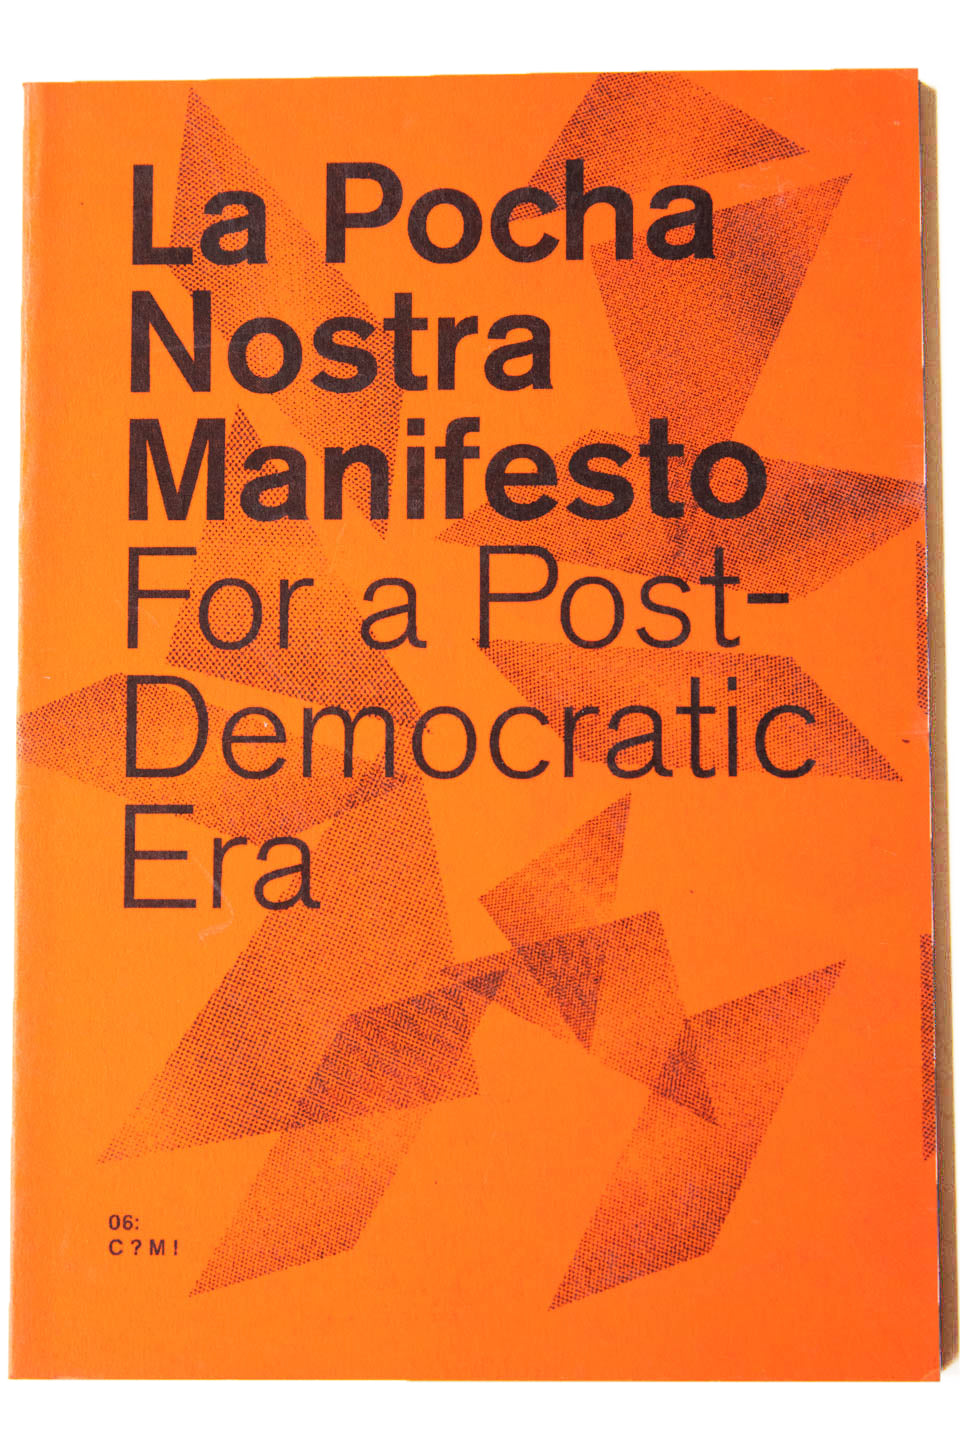 LA POCHA NOSTRA MANIFESTO FOR A POST-DEMOCRATIC ERA